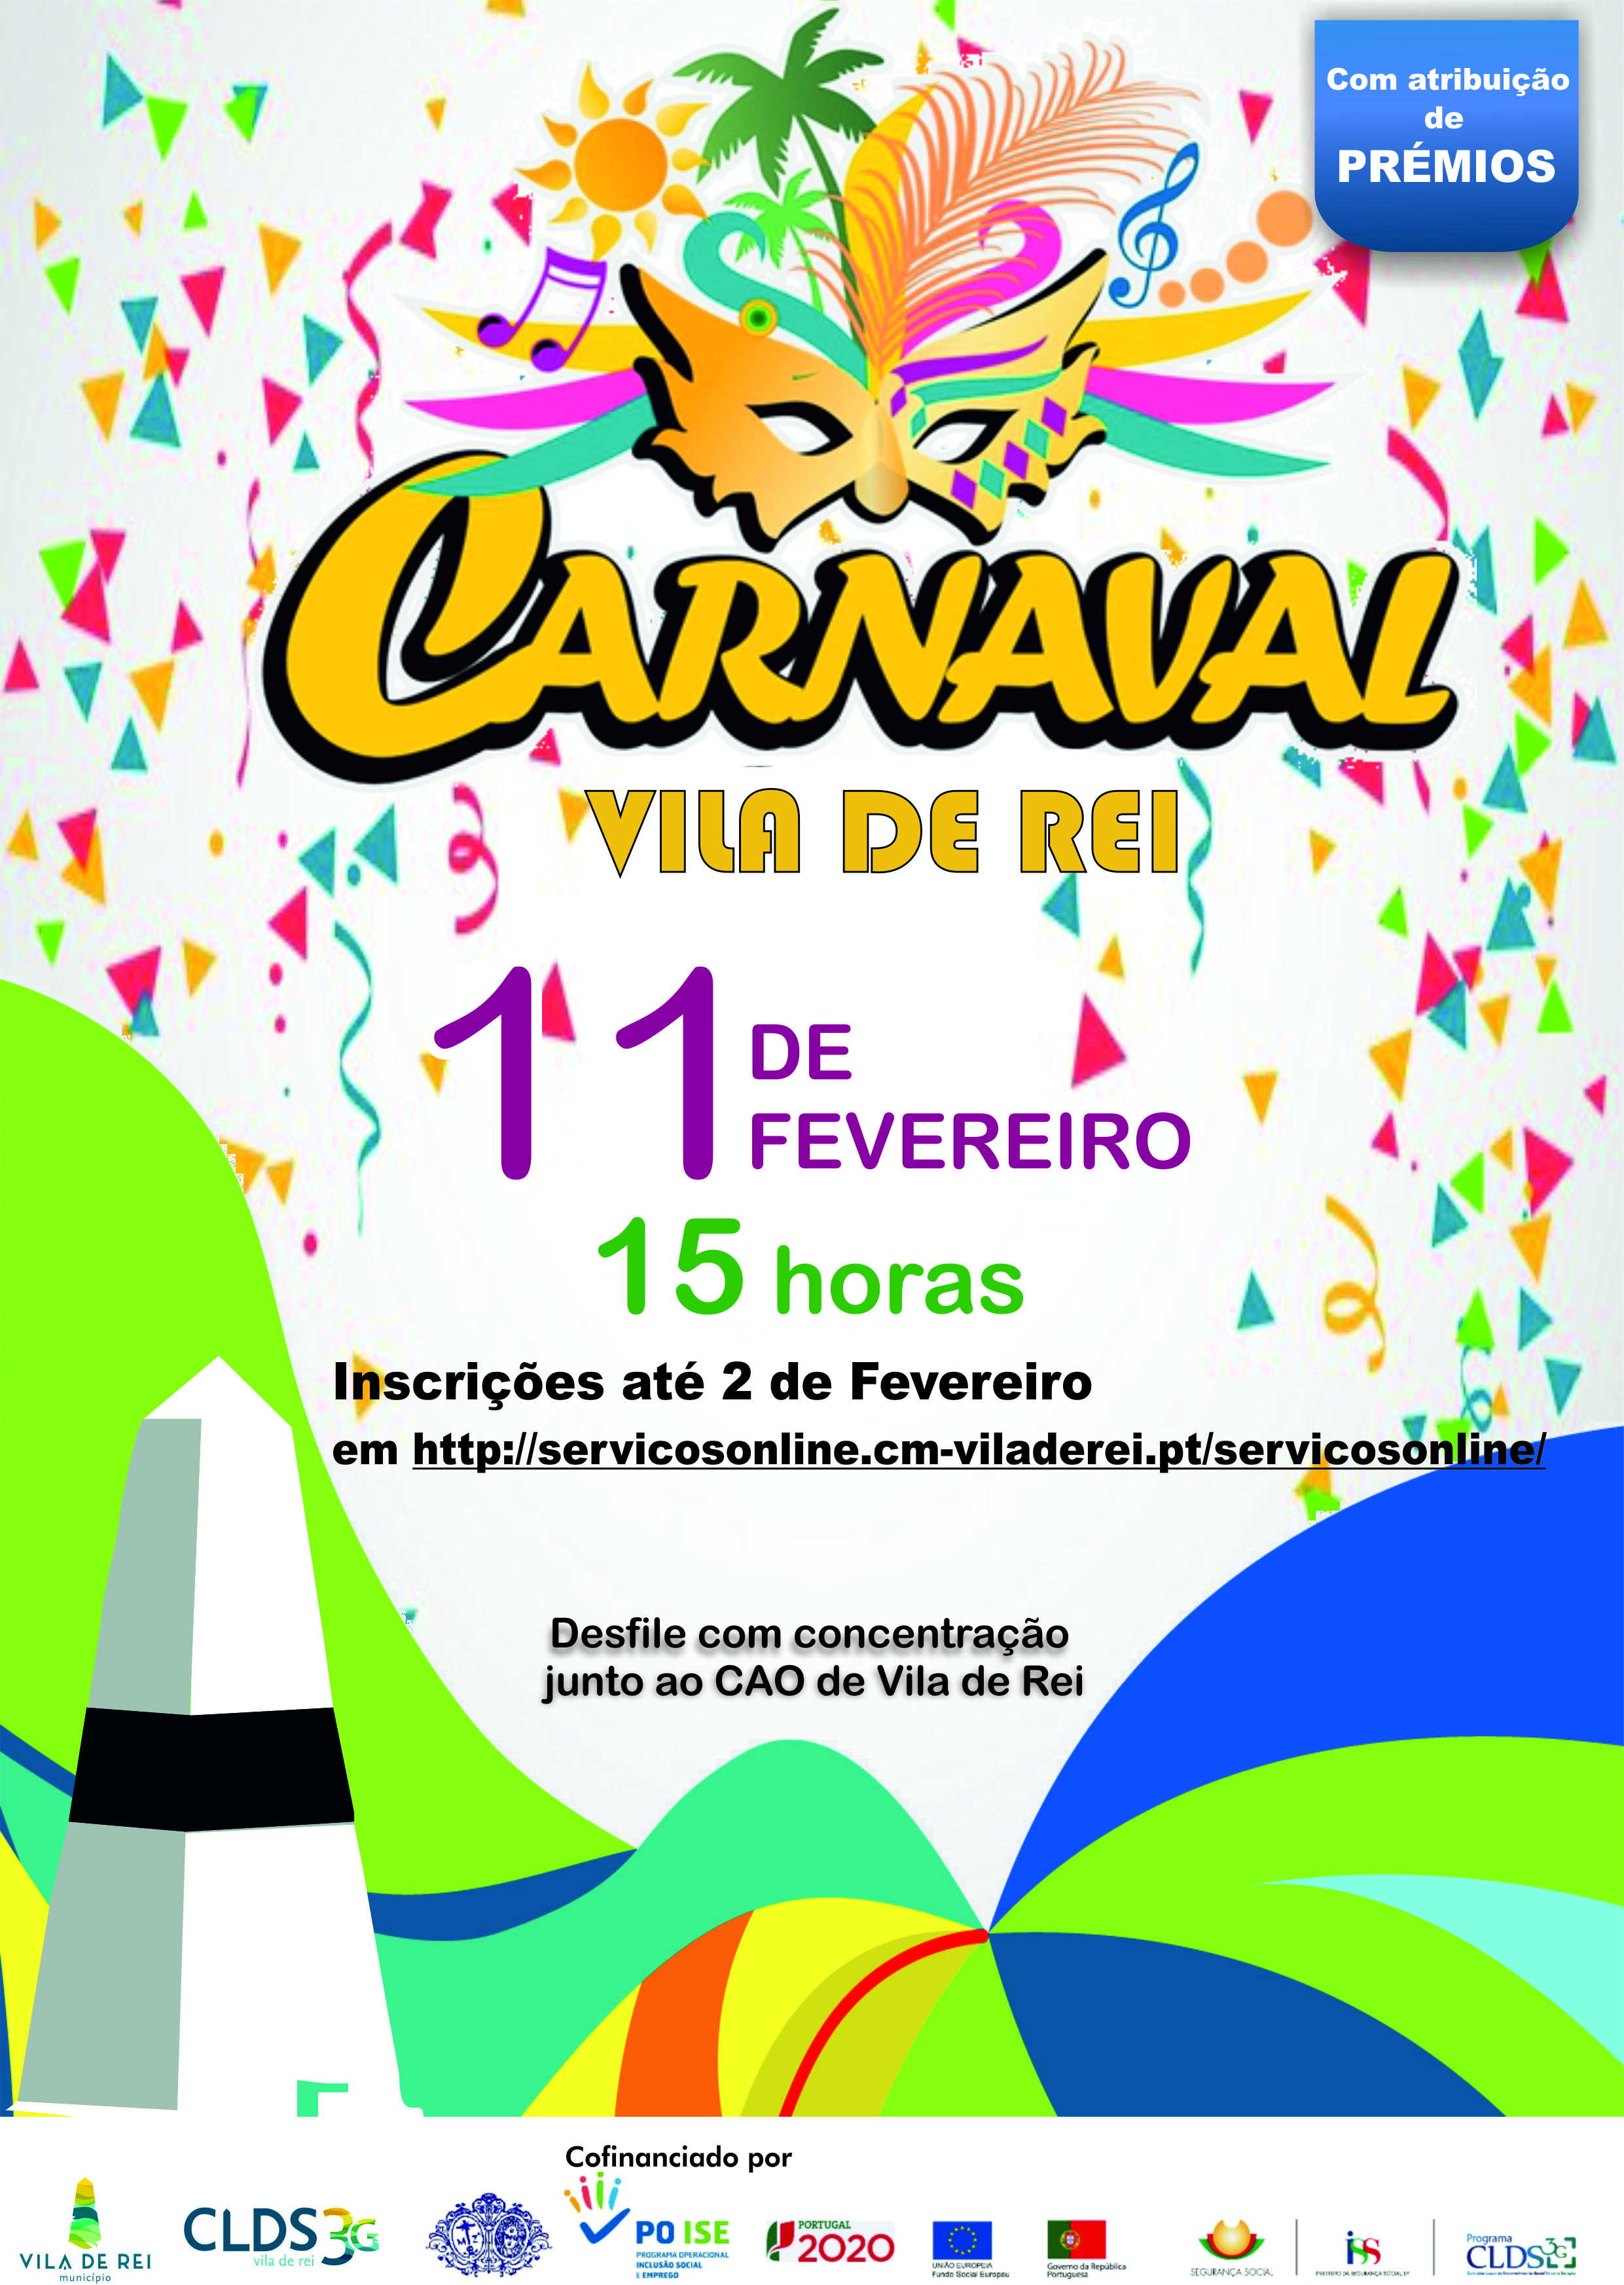 Vila de Rei: Desfile de Carnaval e regresso a 11 de fevereiro